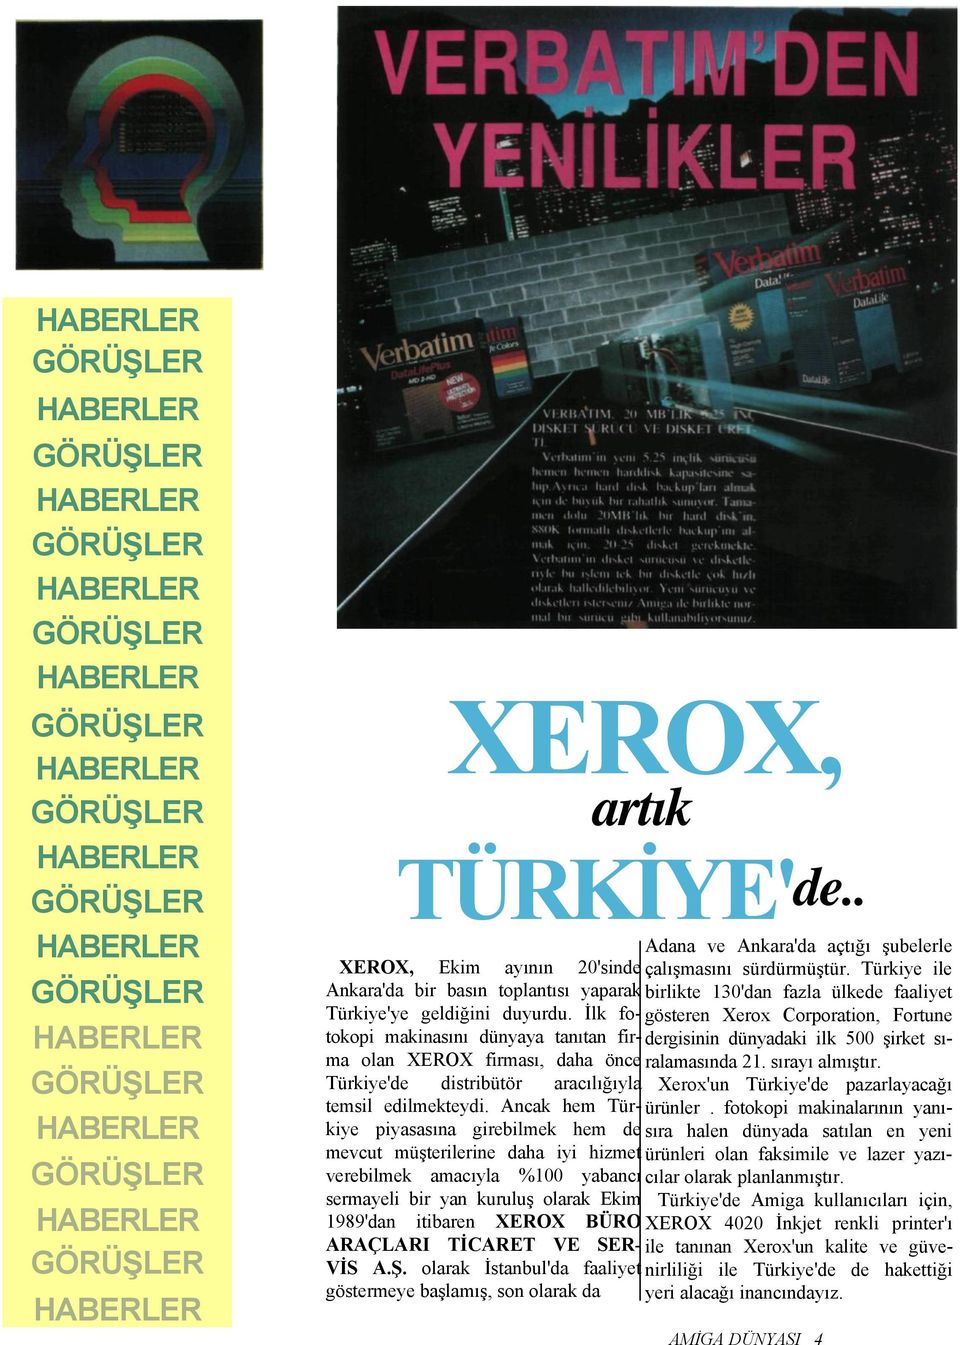 İlk fotokopi makinasını dünyaya tanıtan fir- dergisinin dünyadaki ilk 500 şirket sı- gösteren Xerox Corporation, Fortune ma olan XEROX firması, daha önce ralamasında 21. sırayı almıştır.